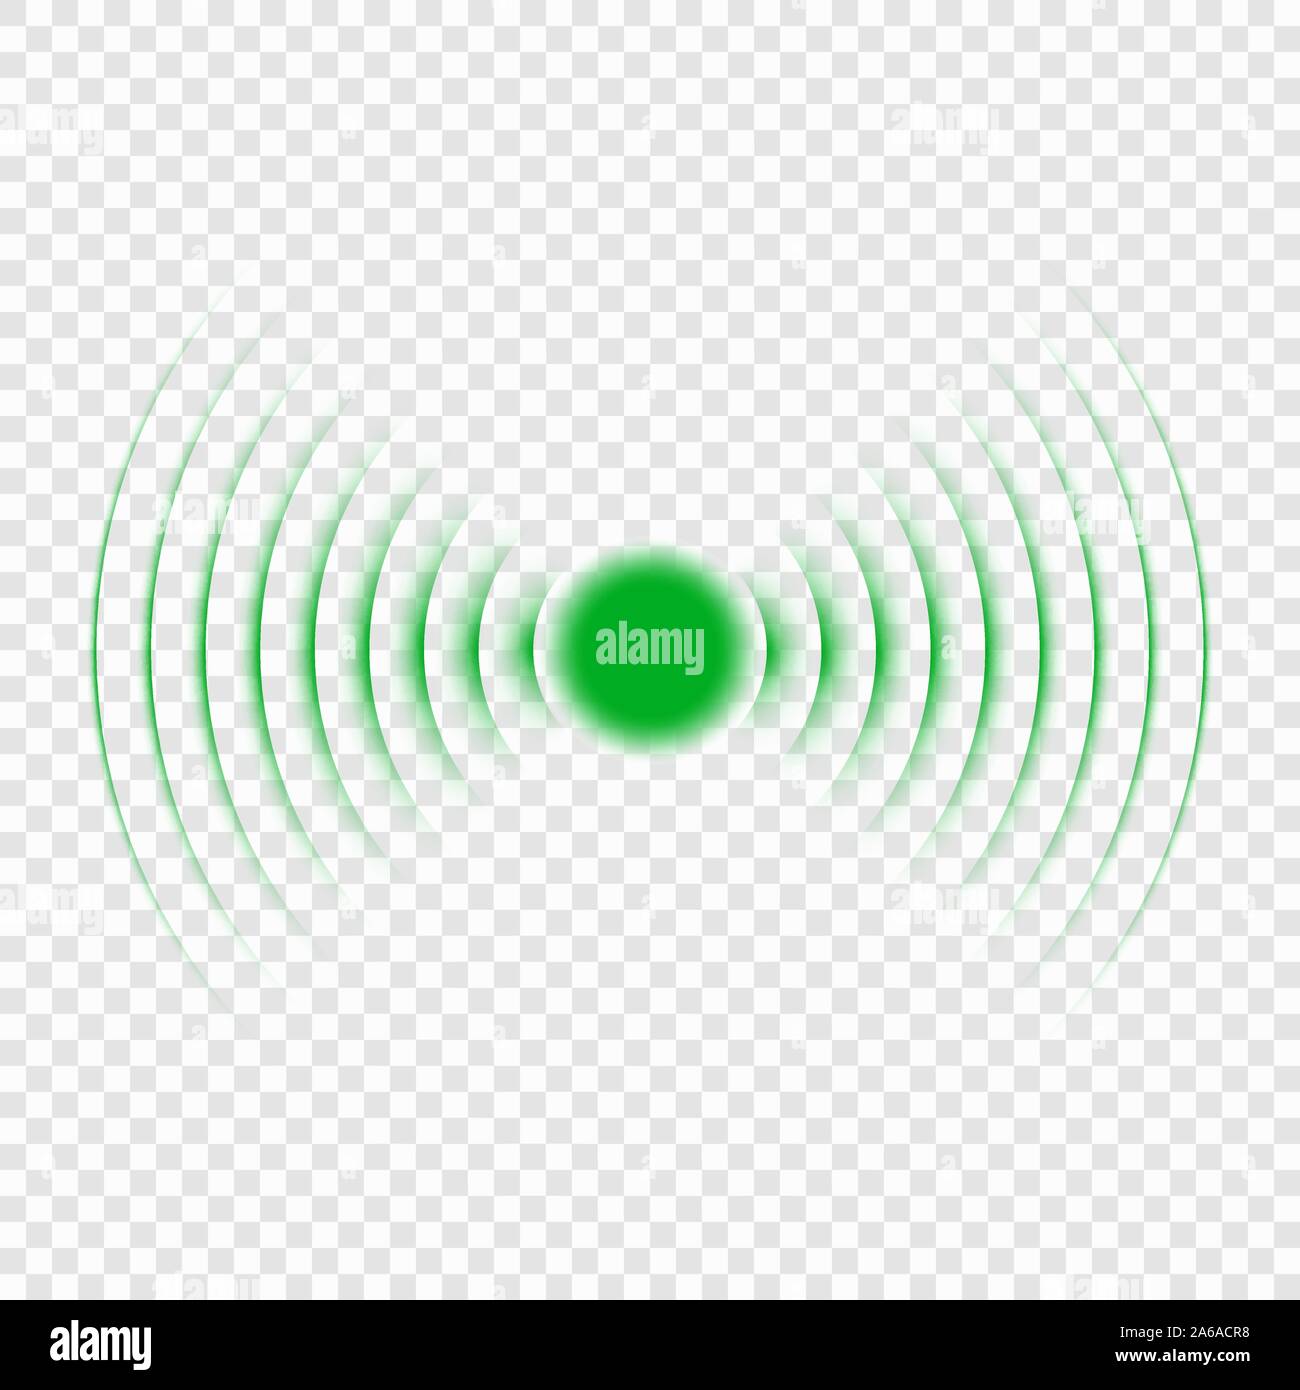 Sonar search sound wave icon. Radar icon Stock Vector